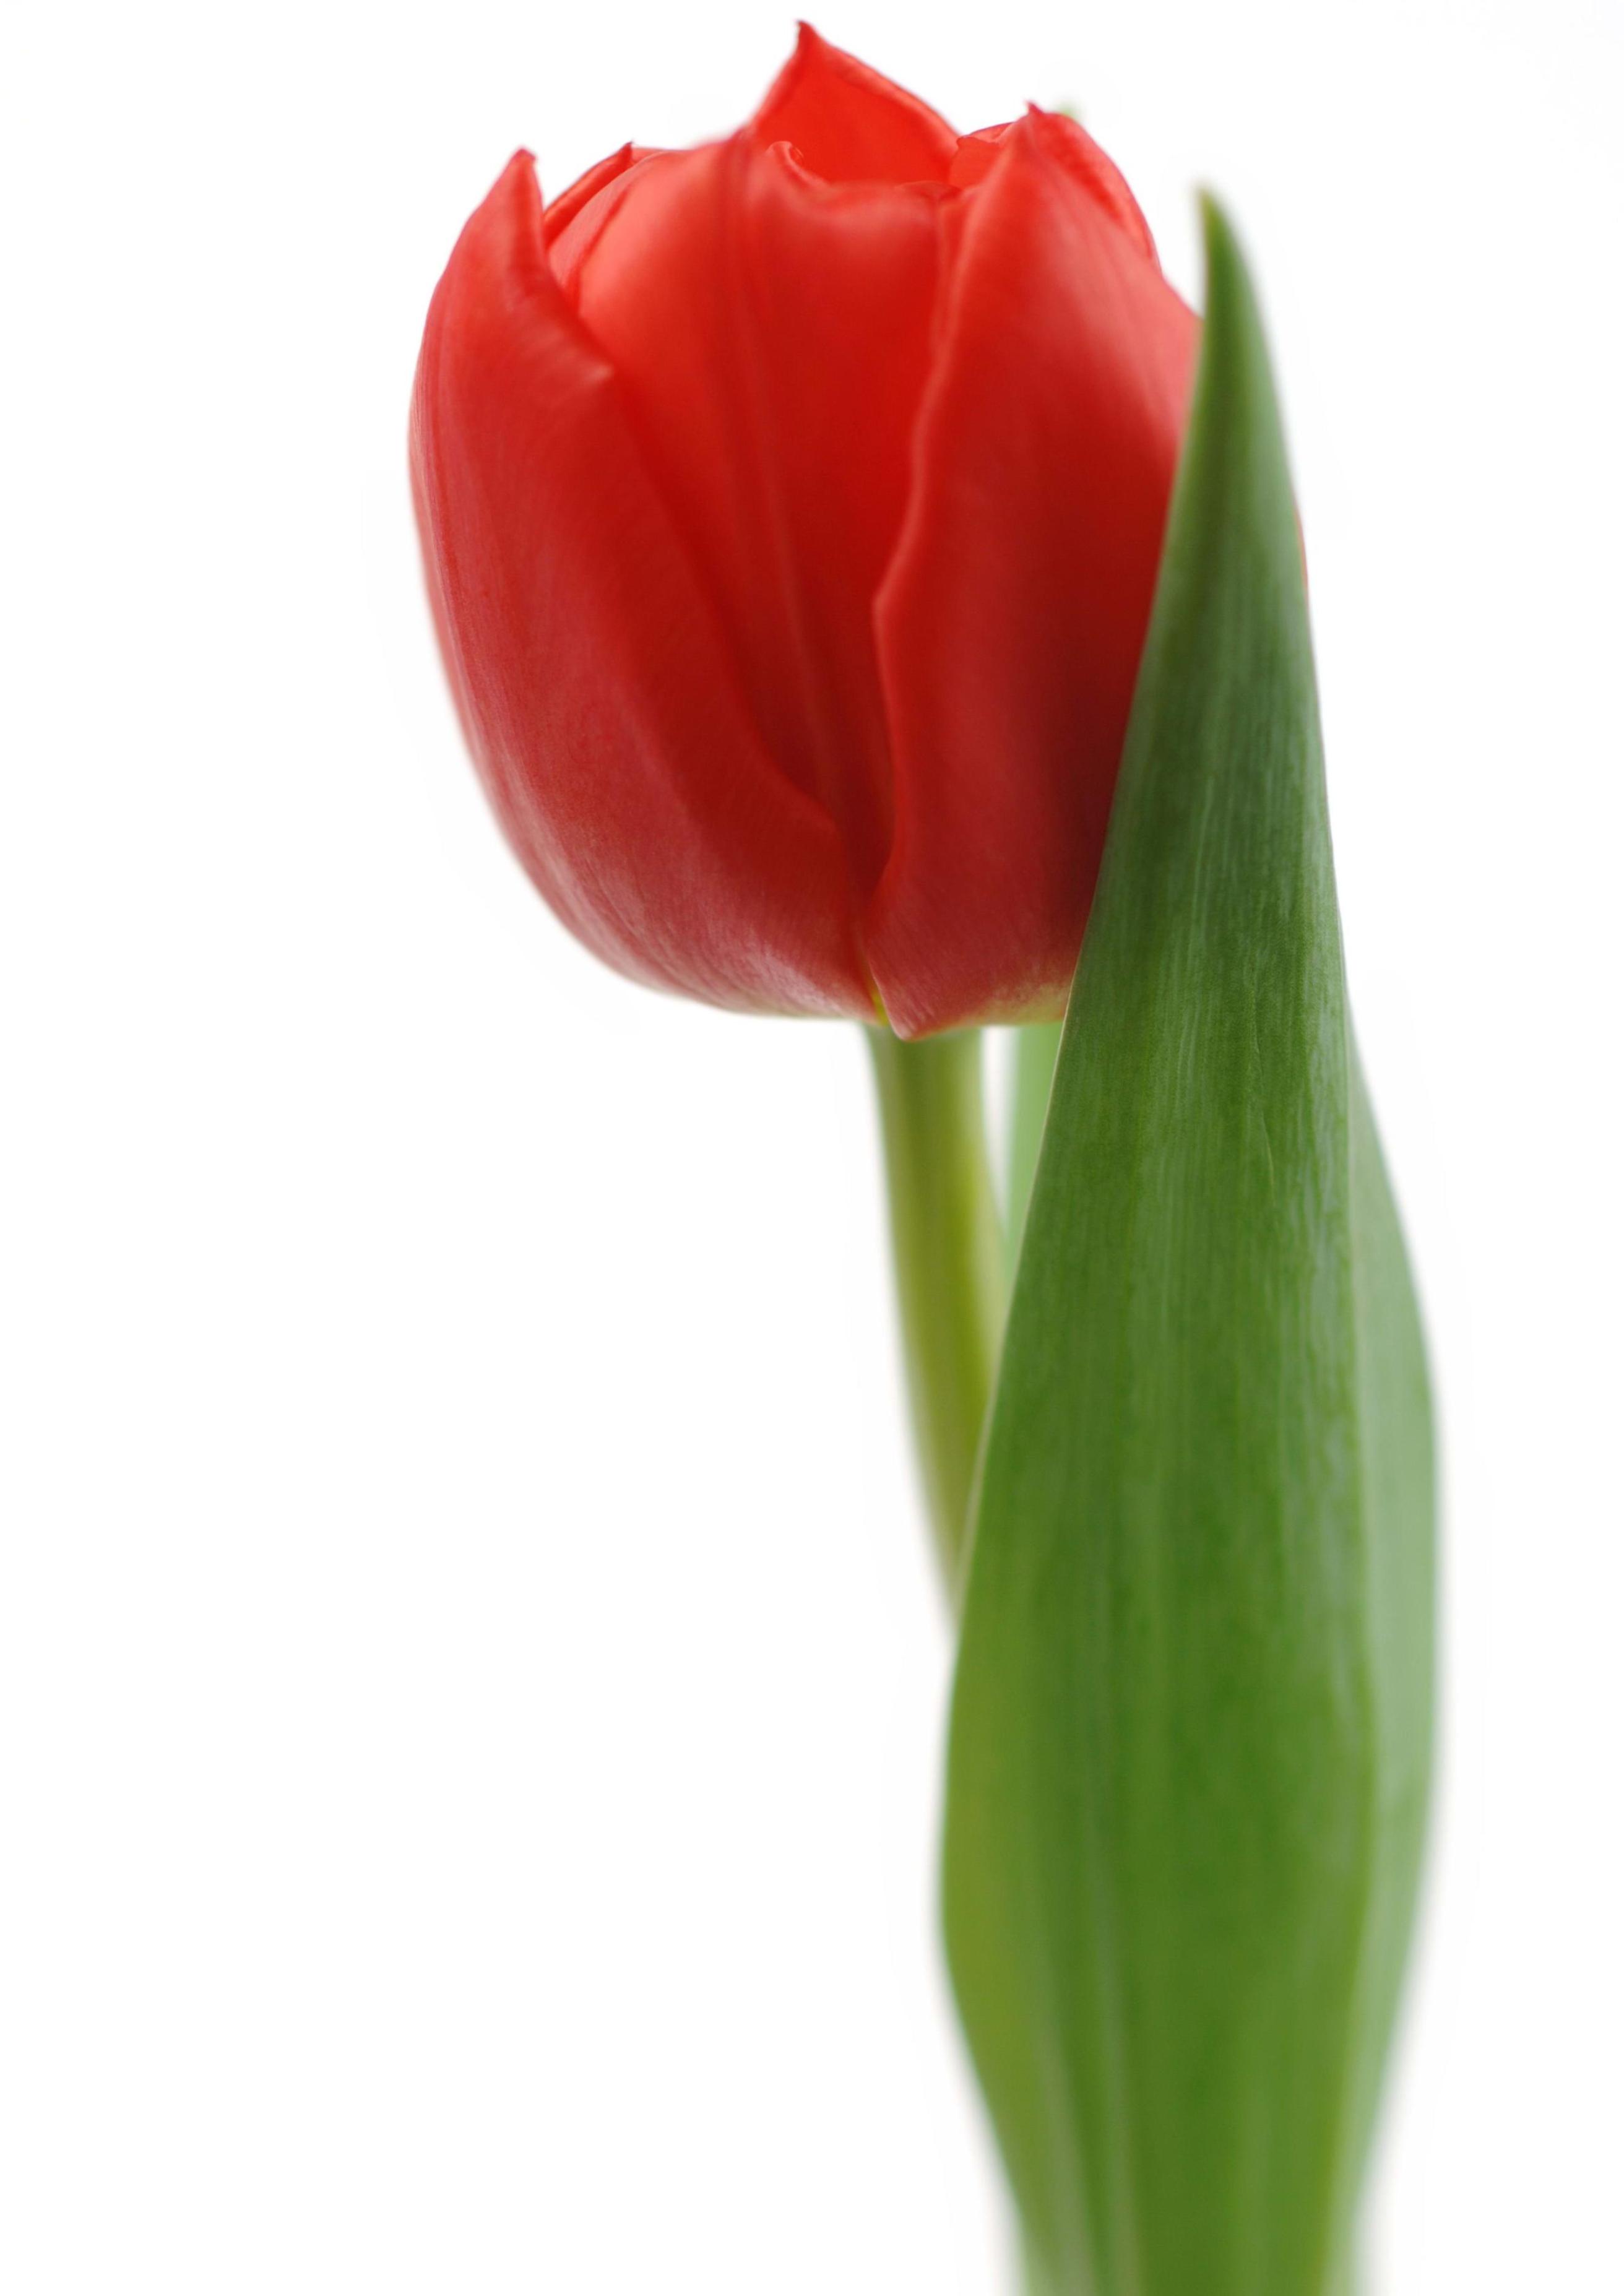 3 красных тюльпана